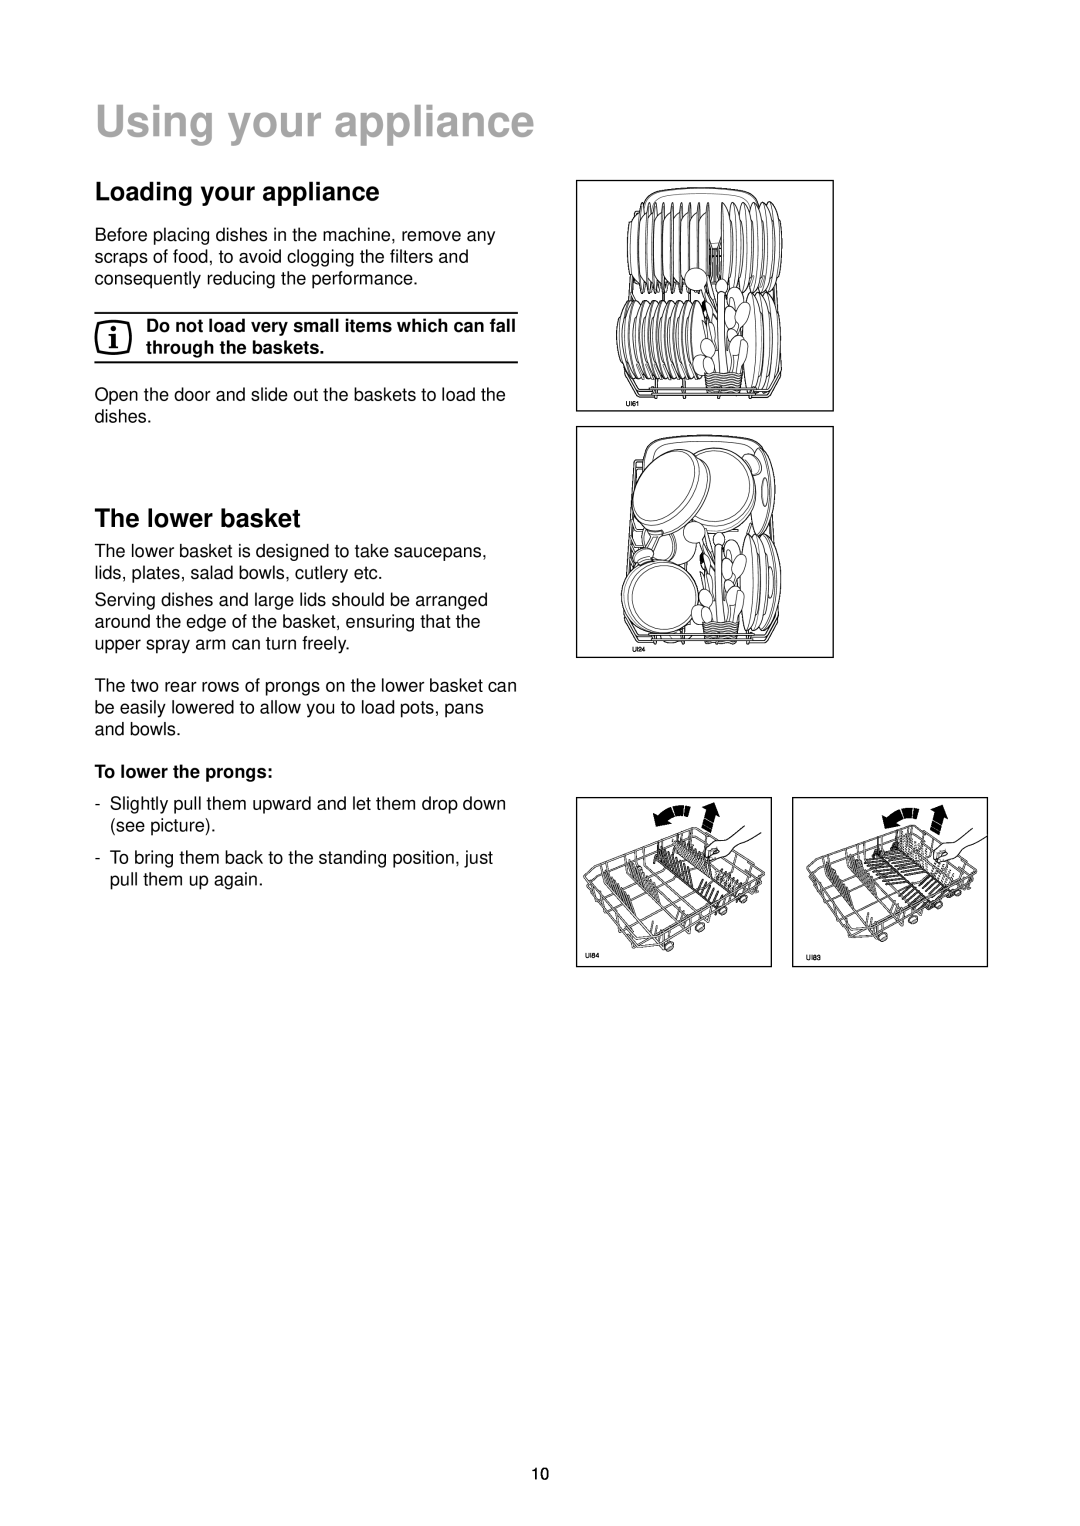 Zanussi DE 4744 manual Using your appliance, Loading your appliance, The lower basket, To lower the prongs 